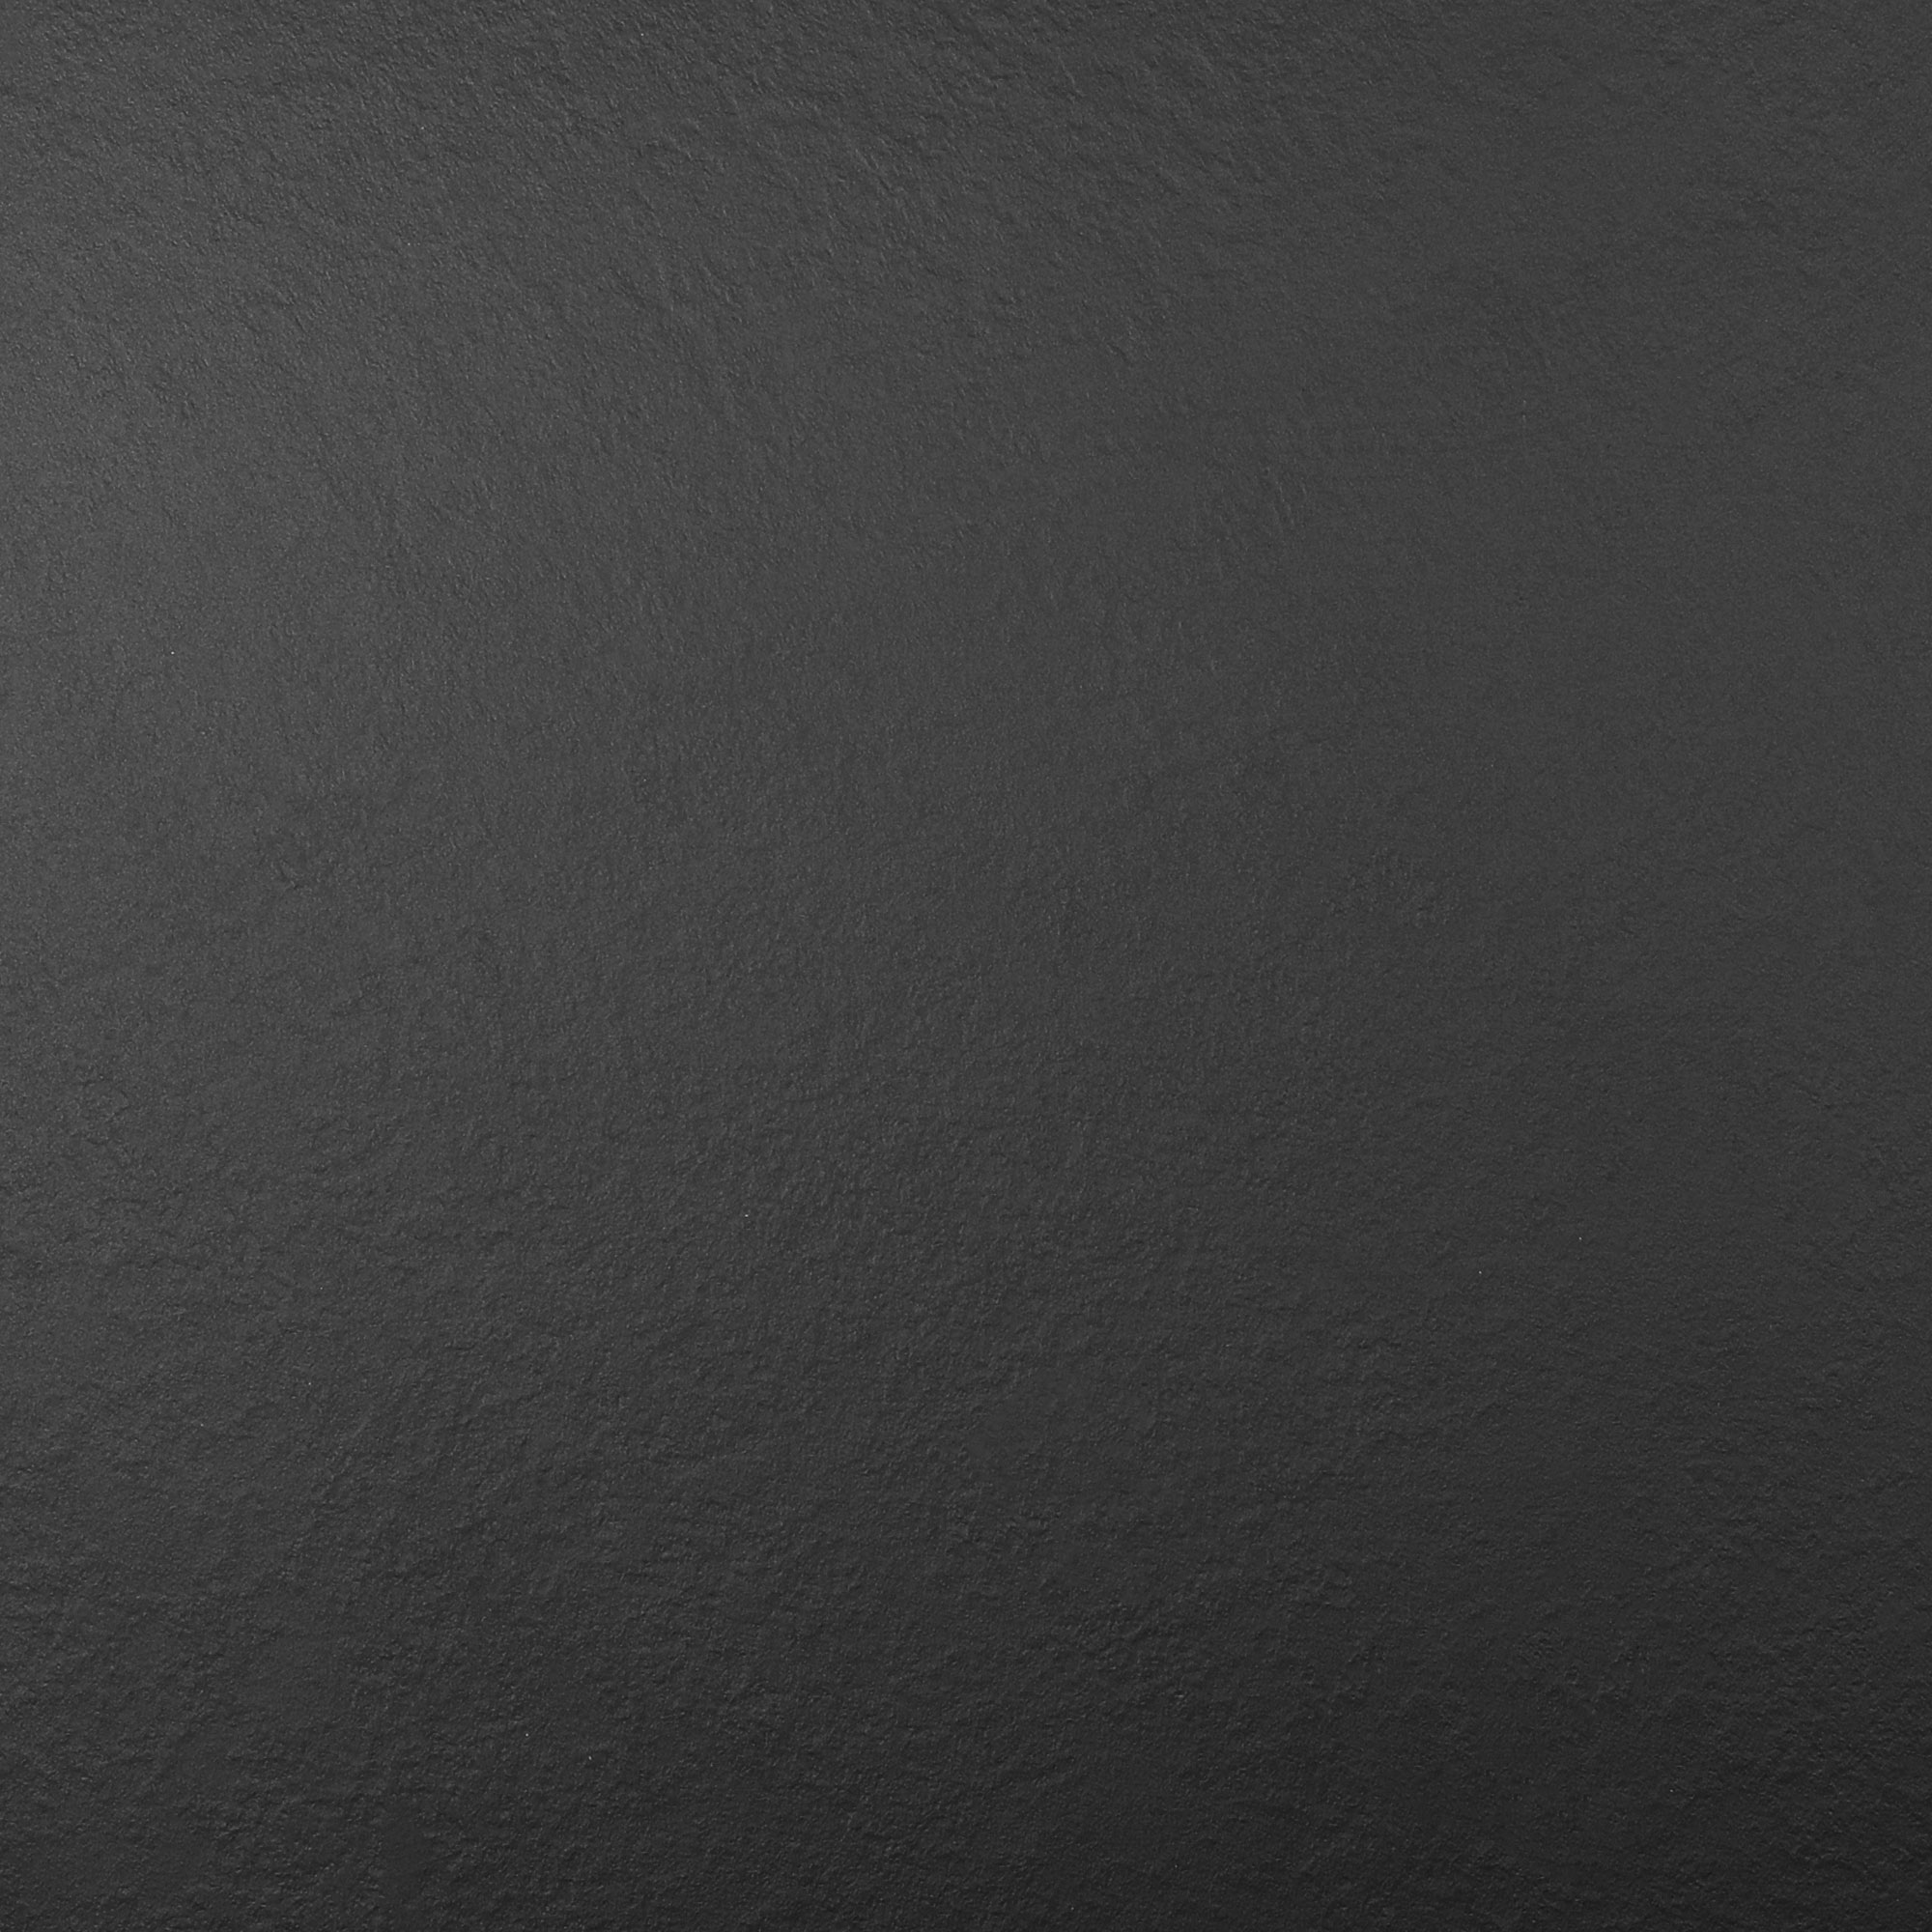 Стол Drigani Dakota round 60 см, цвет чёрный - фото 7